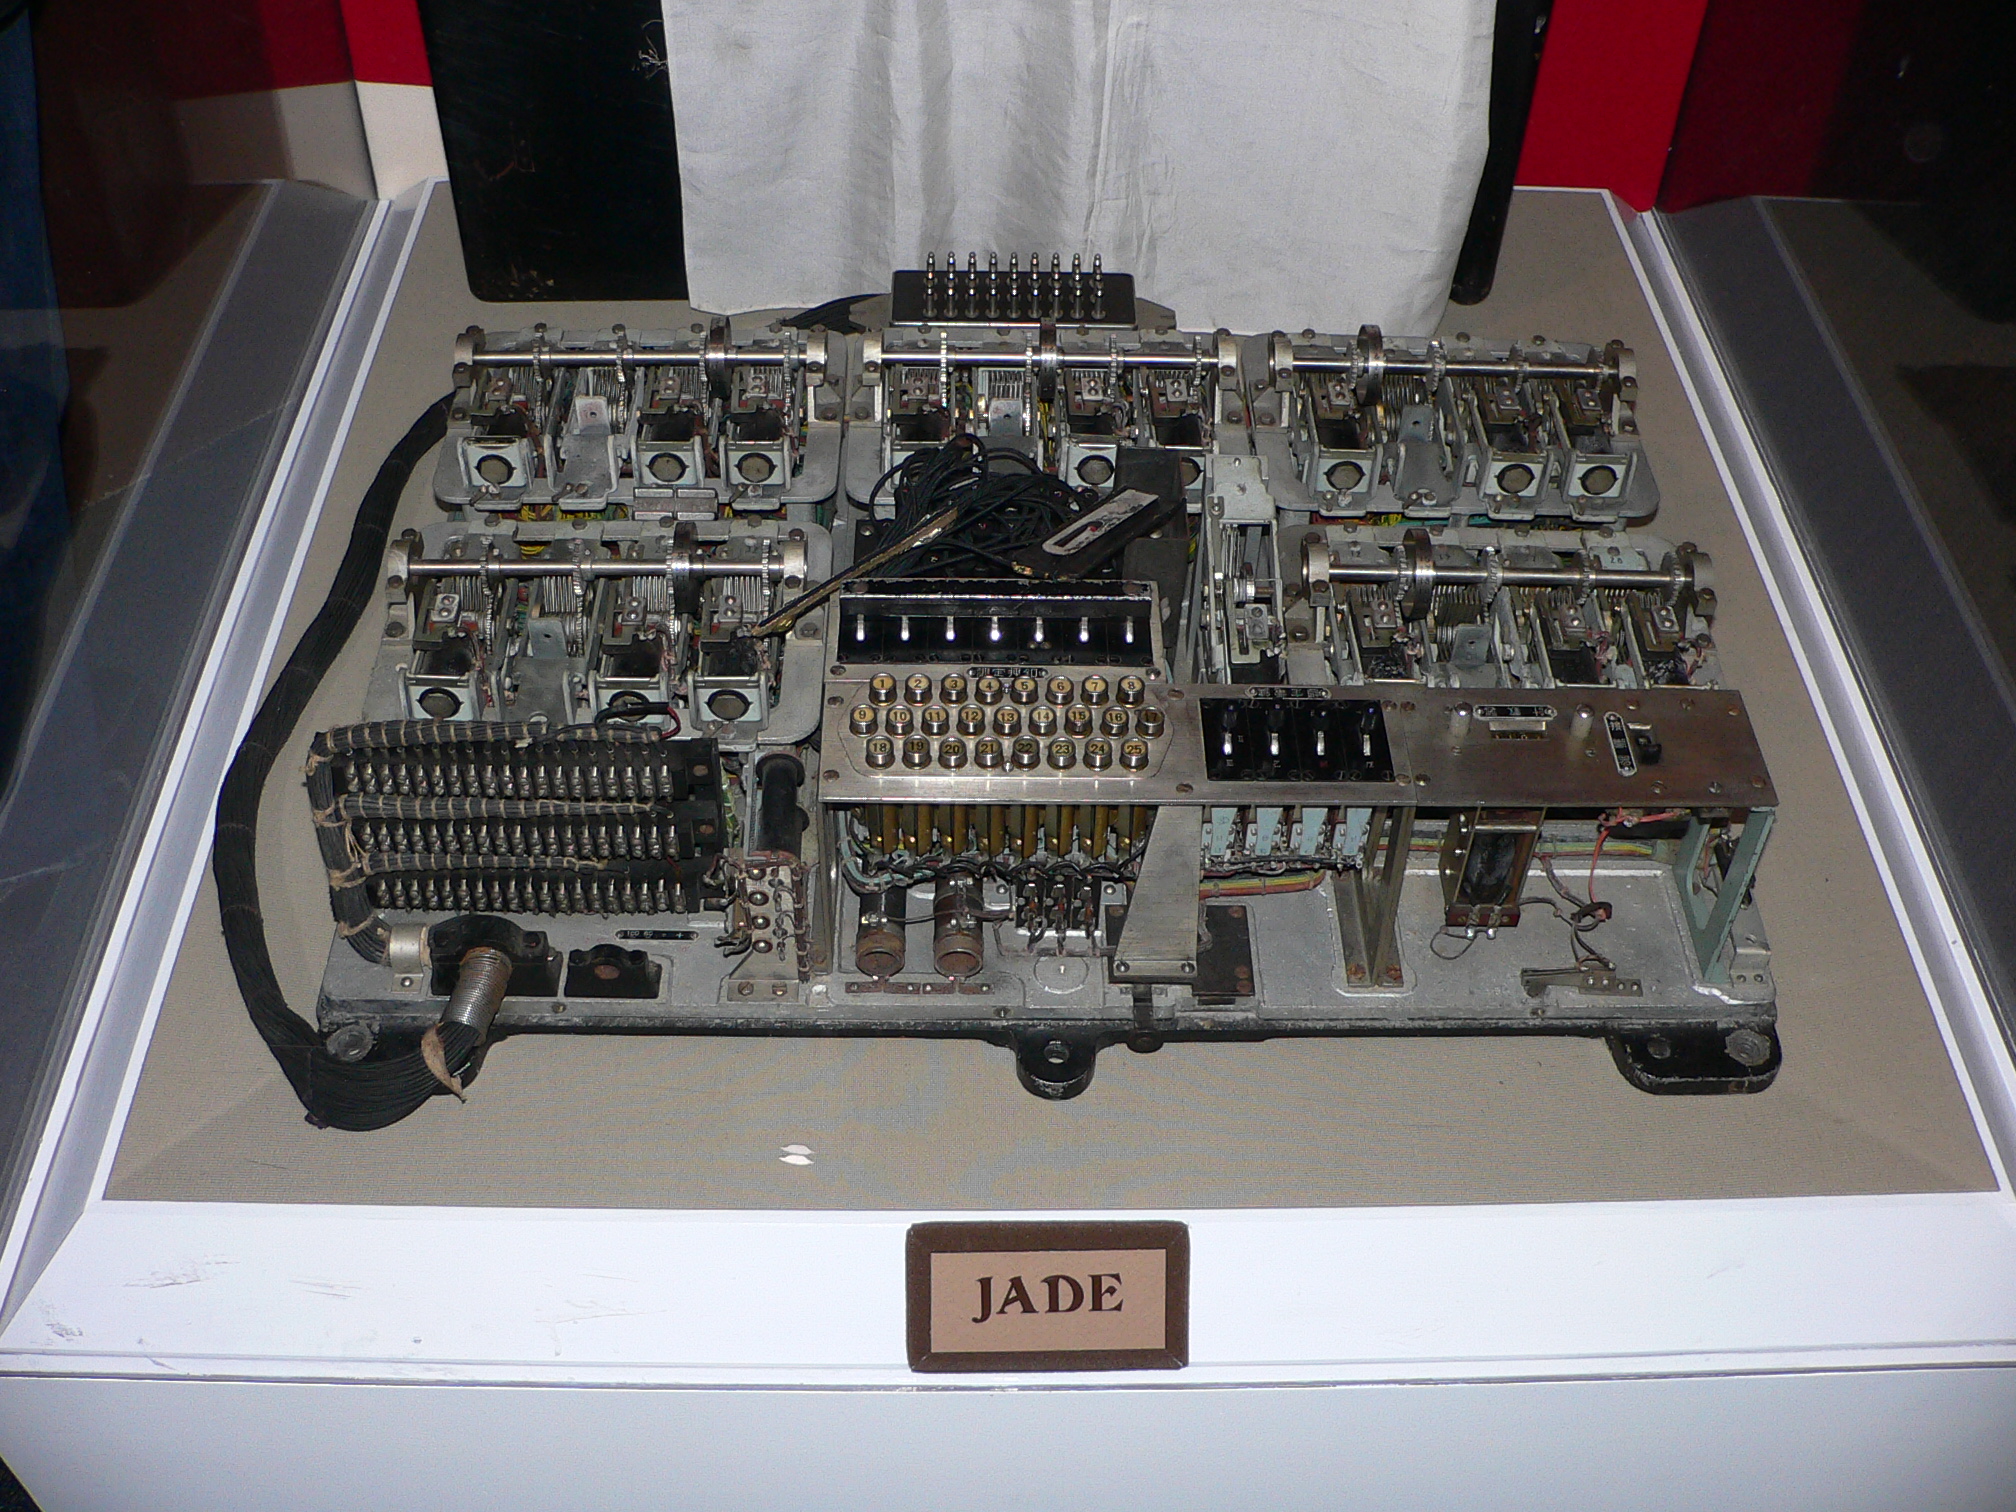 Imperial Japanse navy Jade code machine 2